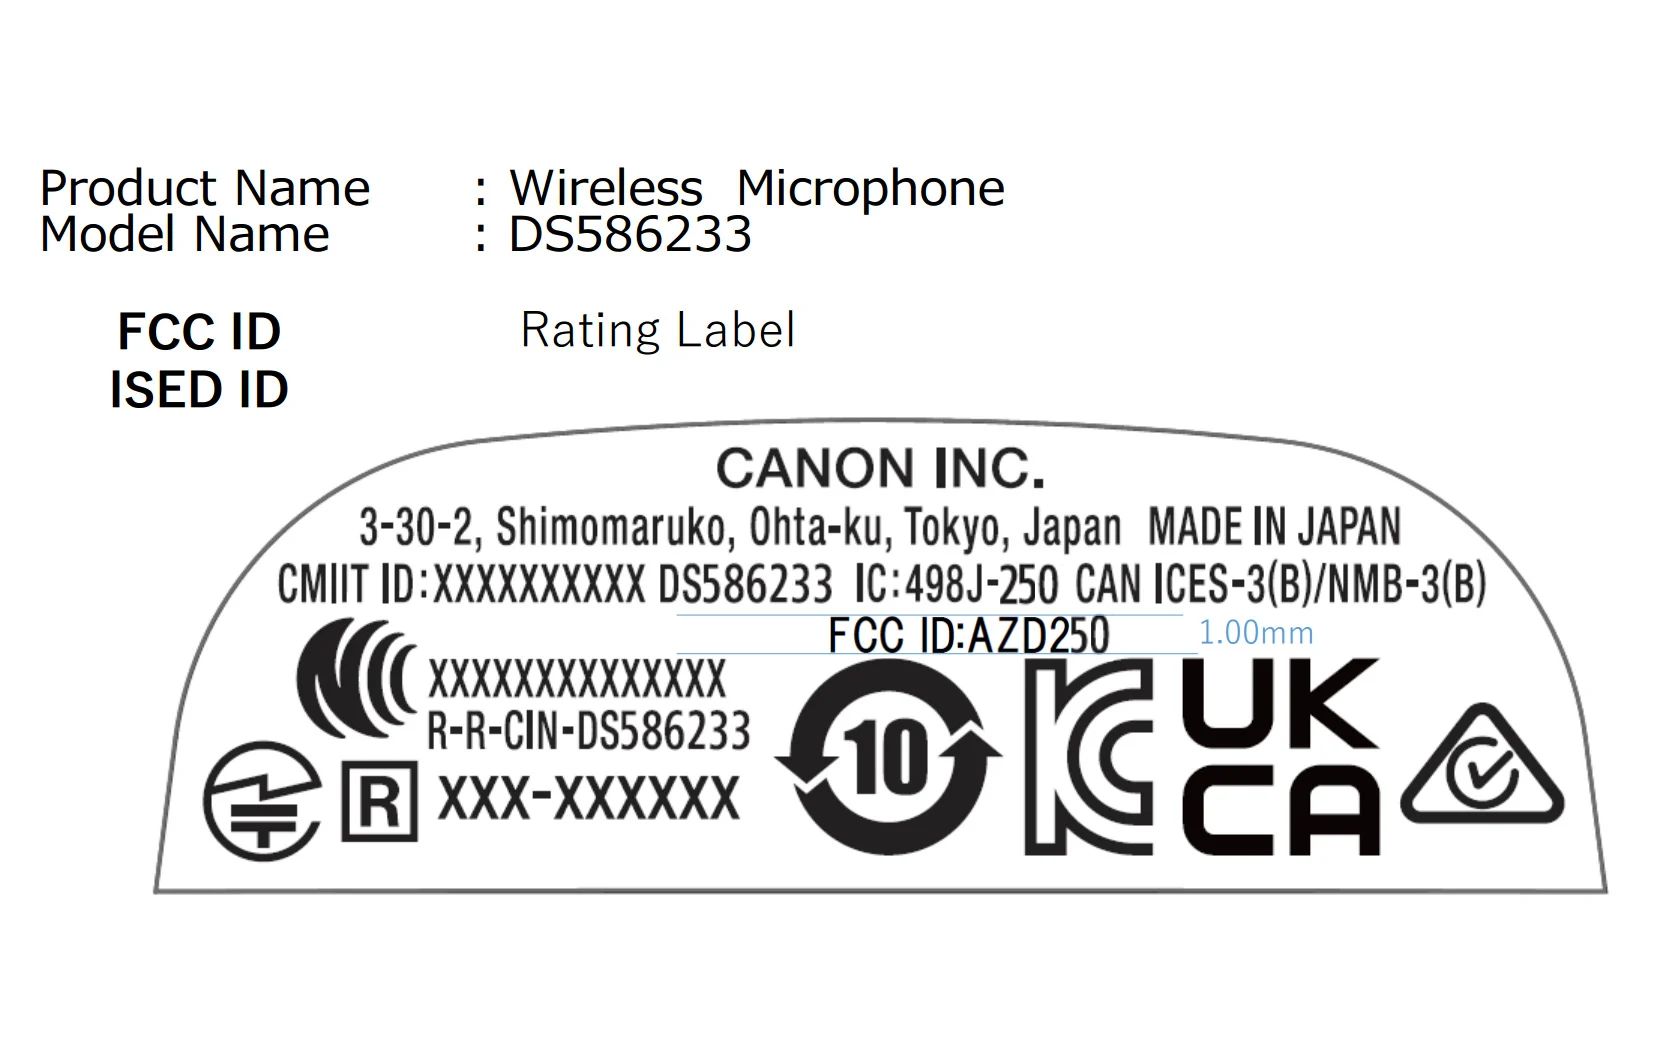 支持无线通信，佳能无线麦克风产品通过 3C 认证  第6张